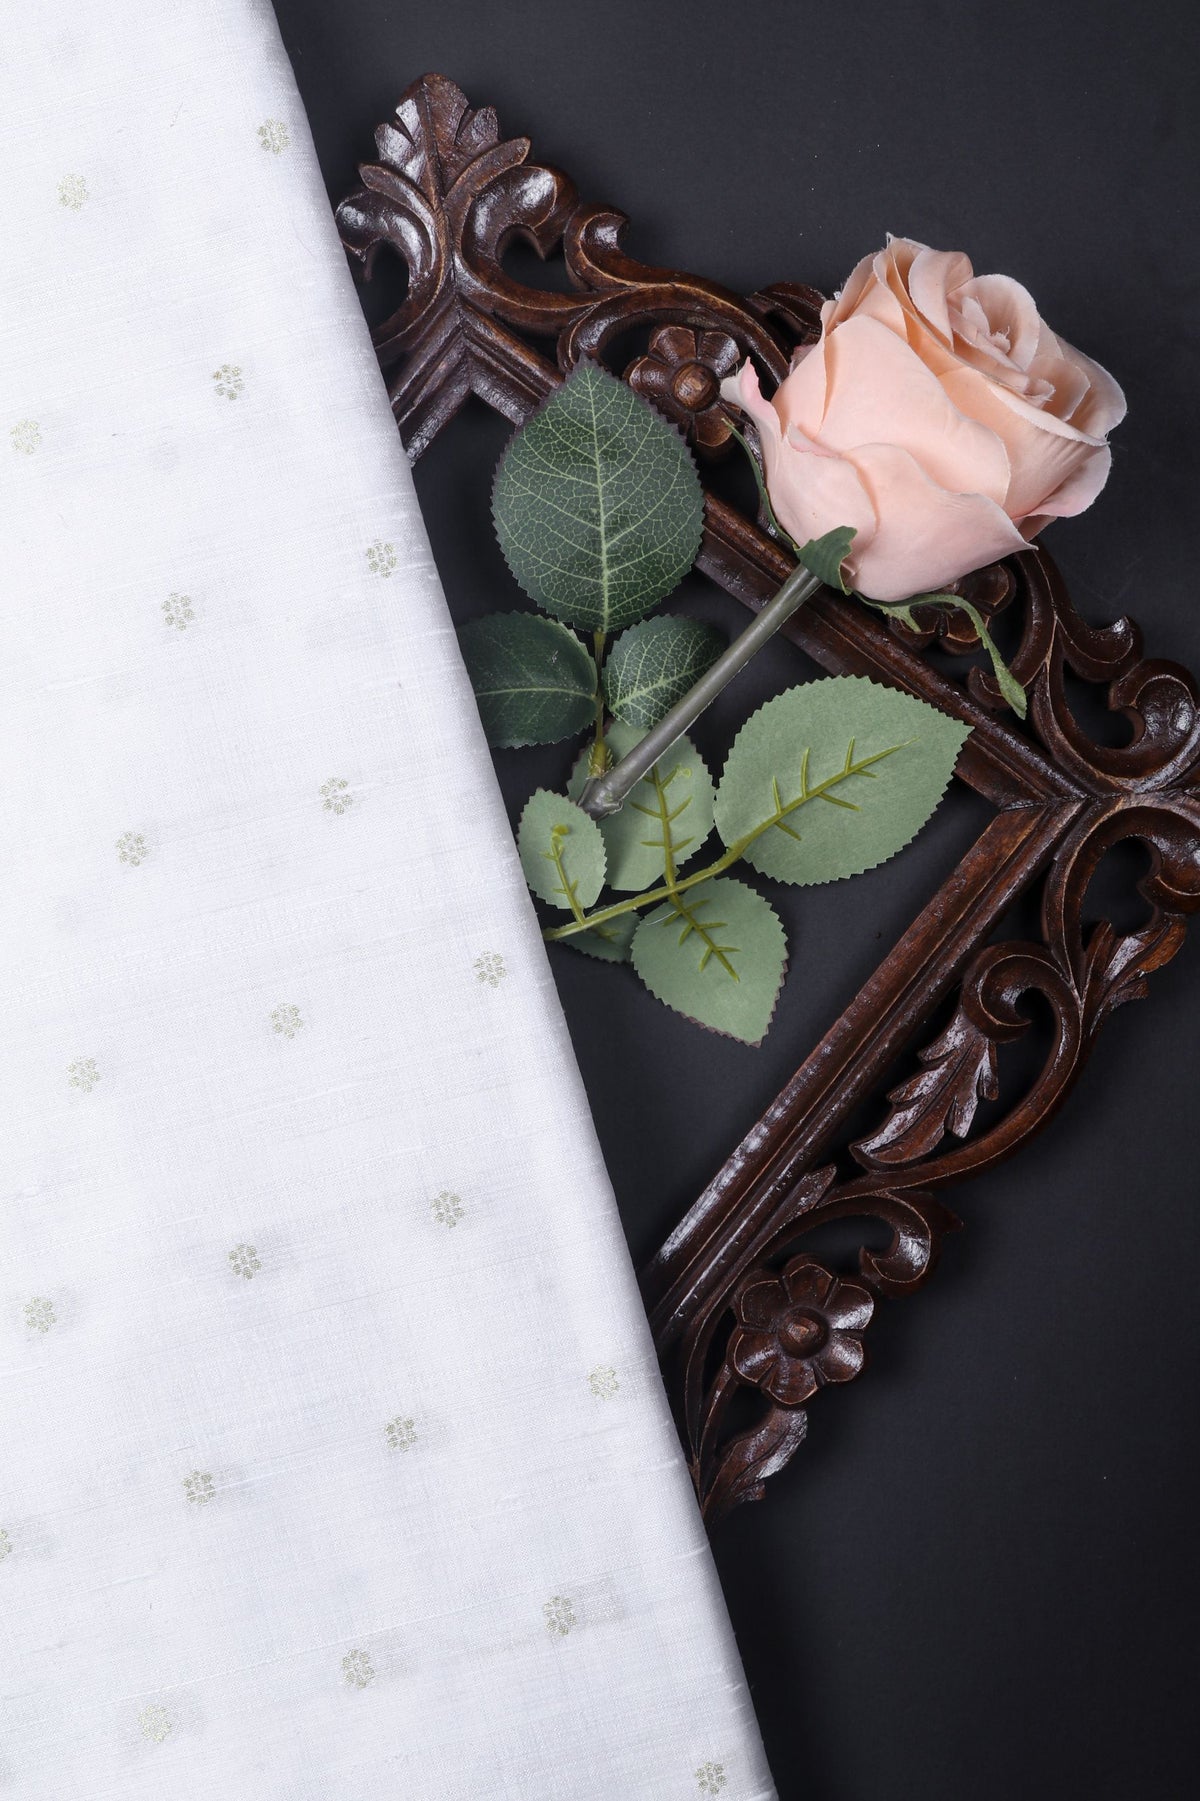 White Chiniya Silk Fabric